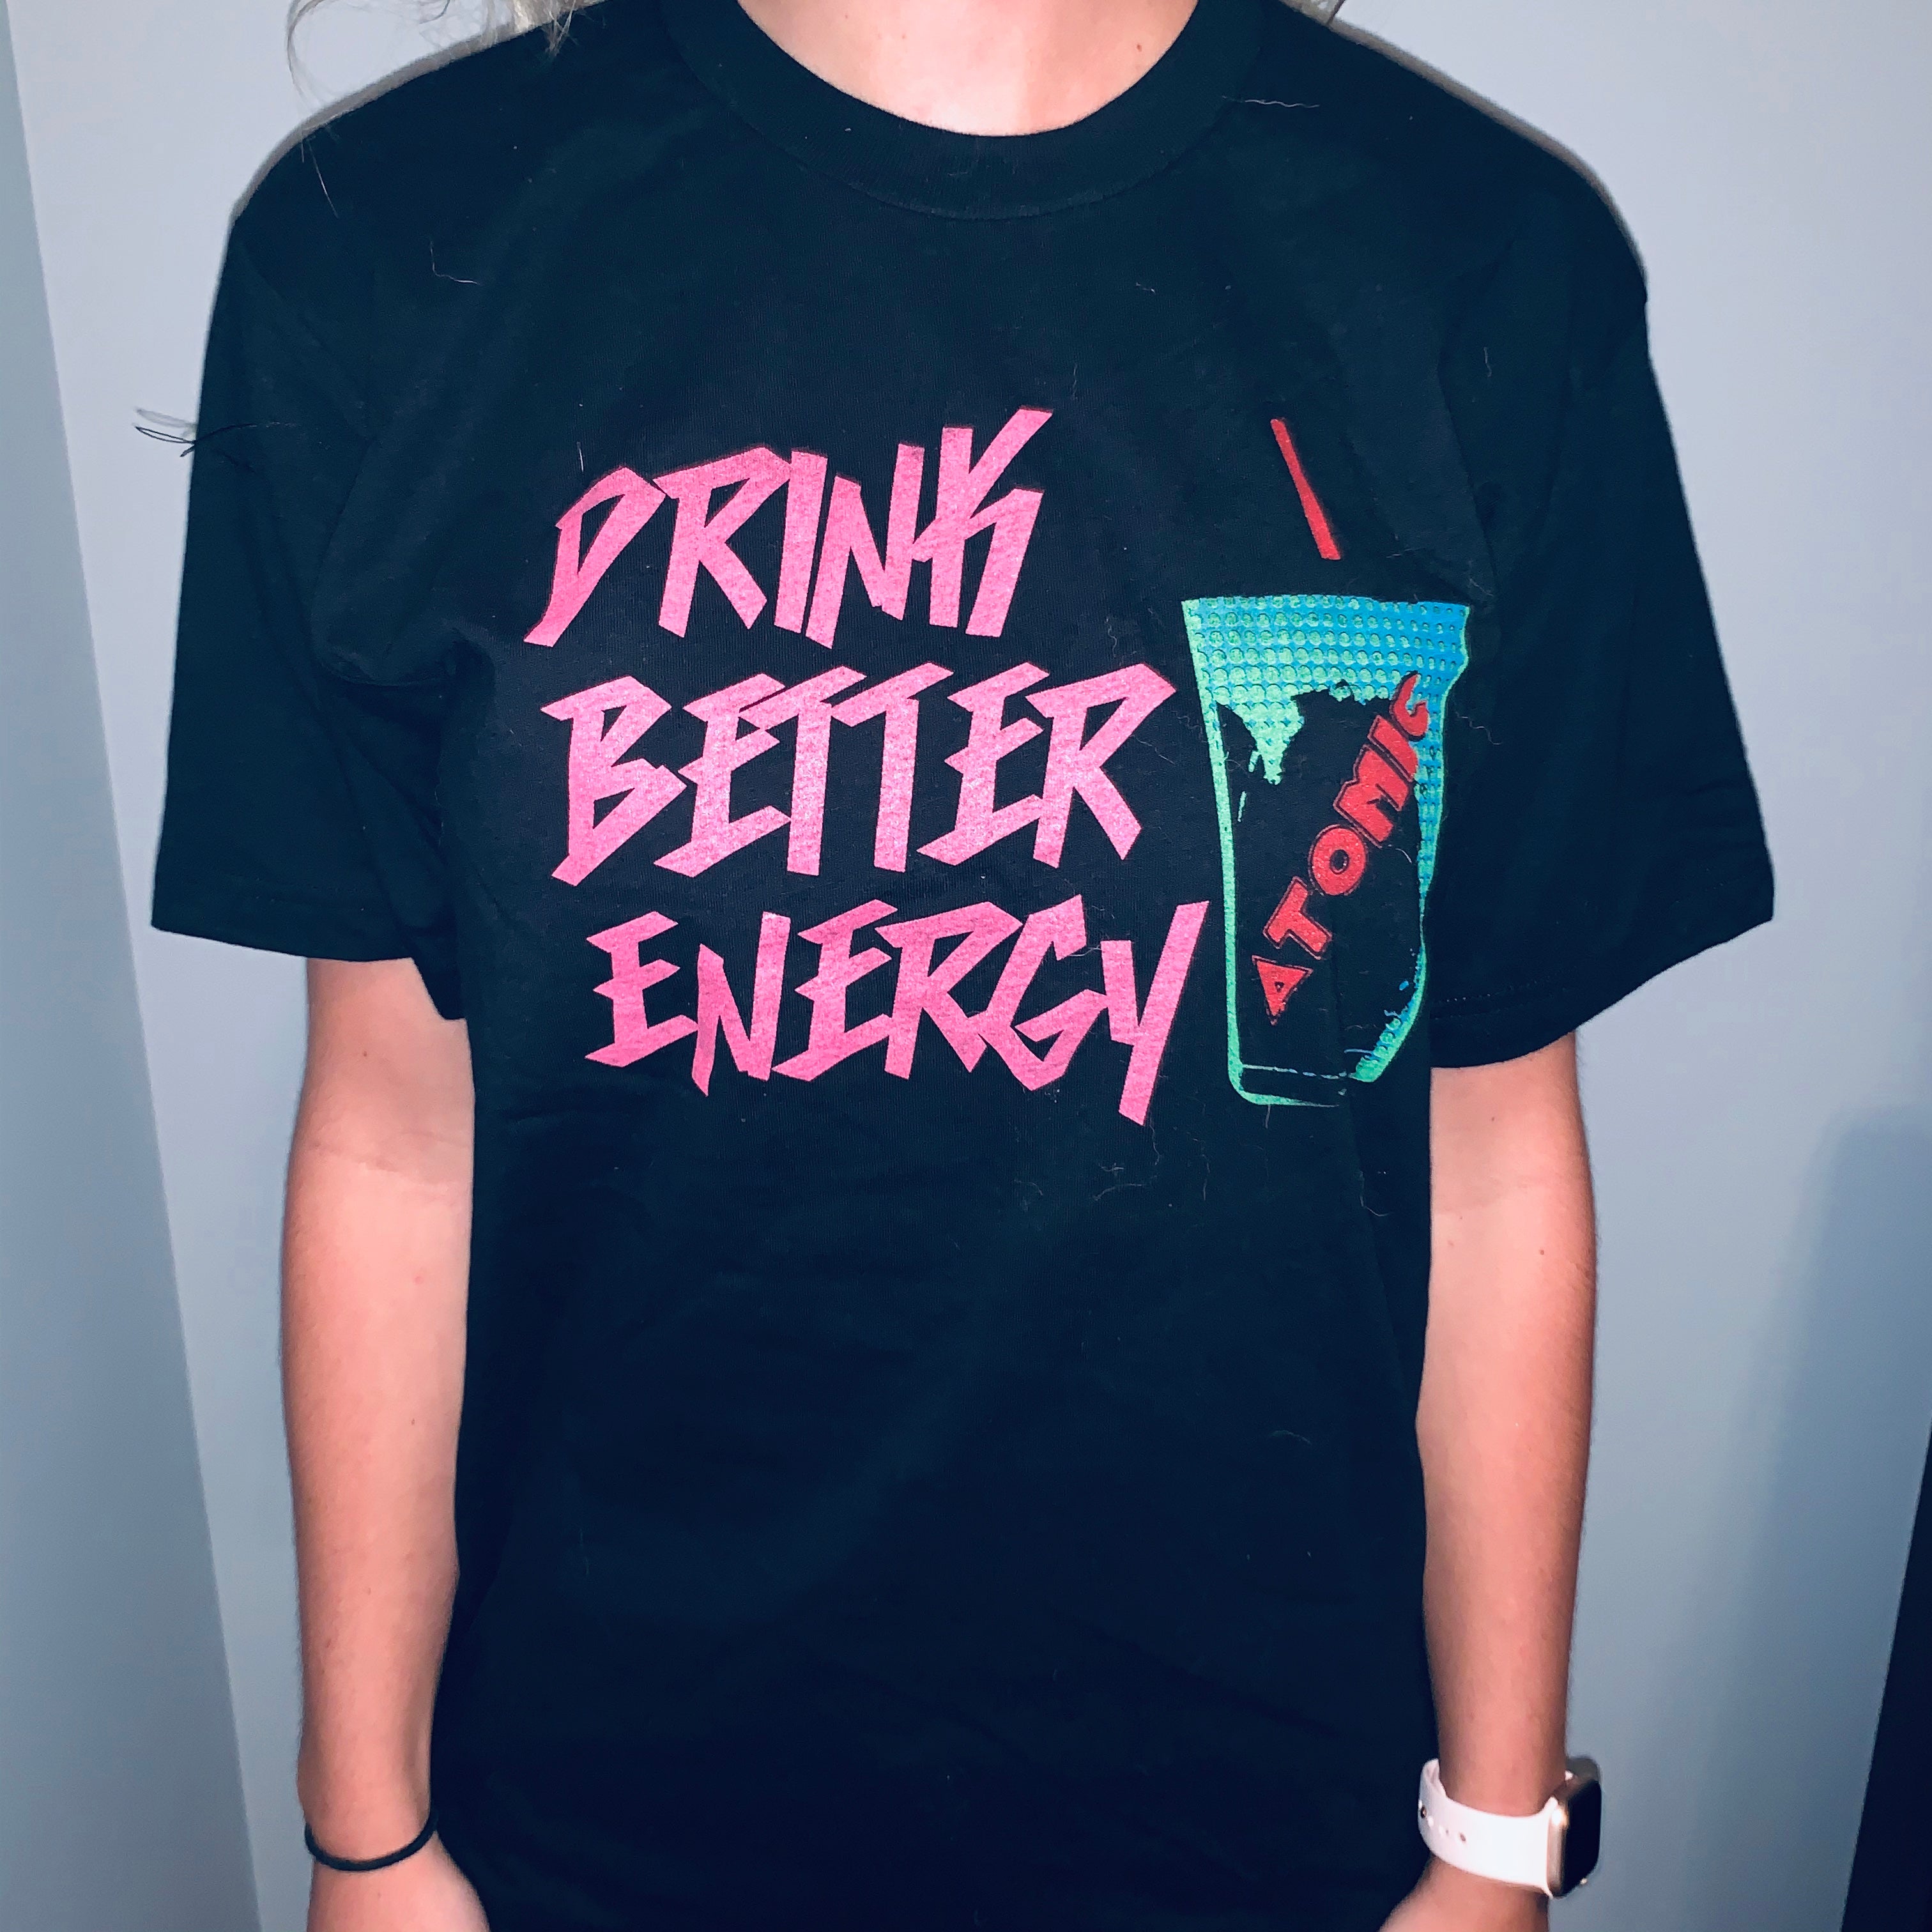 Drink Better Energy T-shirt& Sticker